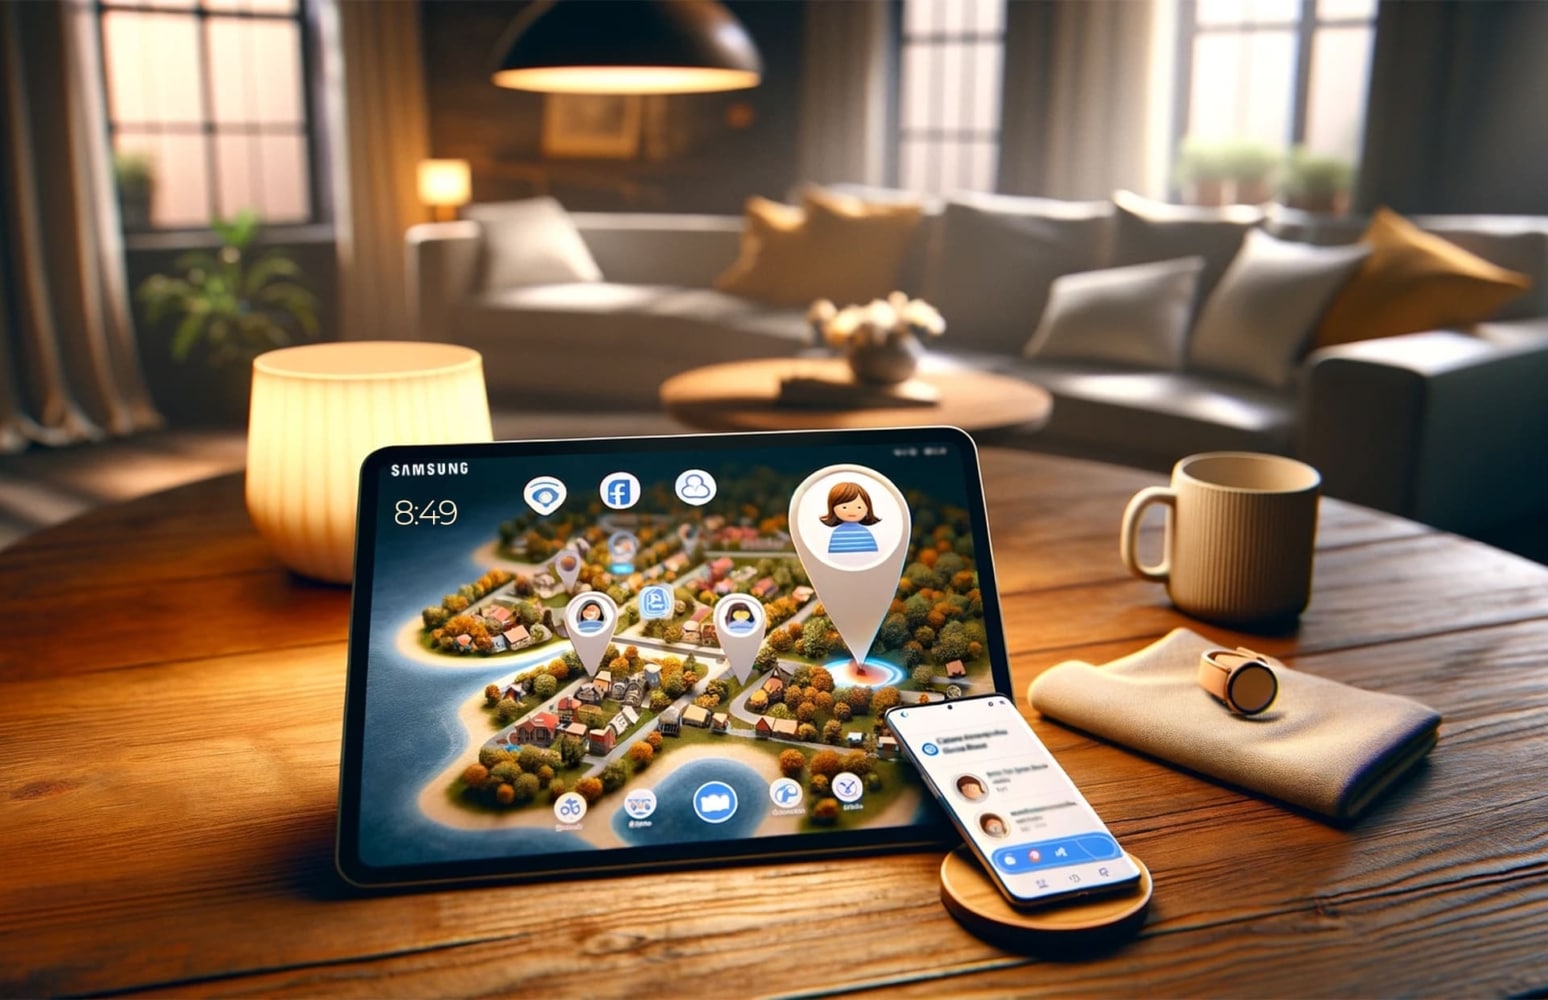 Dans la pièce, une tablette Samsung avec une carte ouverte montrant le terrain avec des arbres, des maisons et des marques de géolocalisation est posée sur une table, avec un téléphone allumé à côté